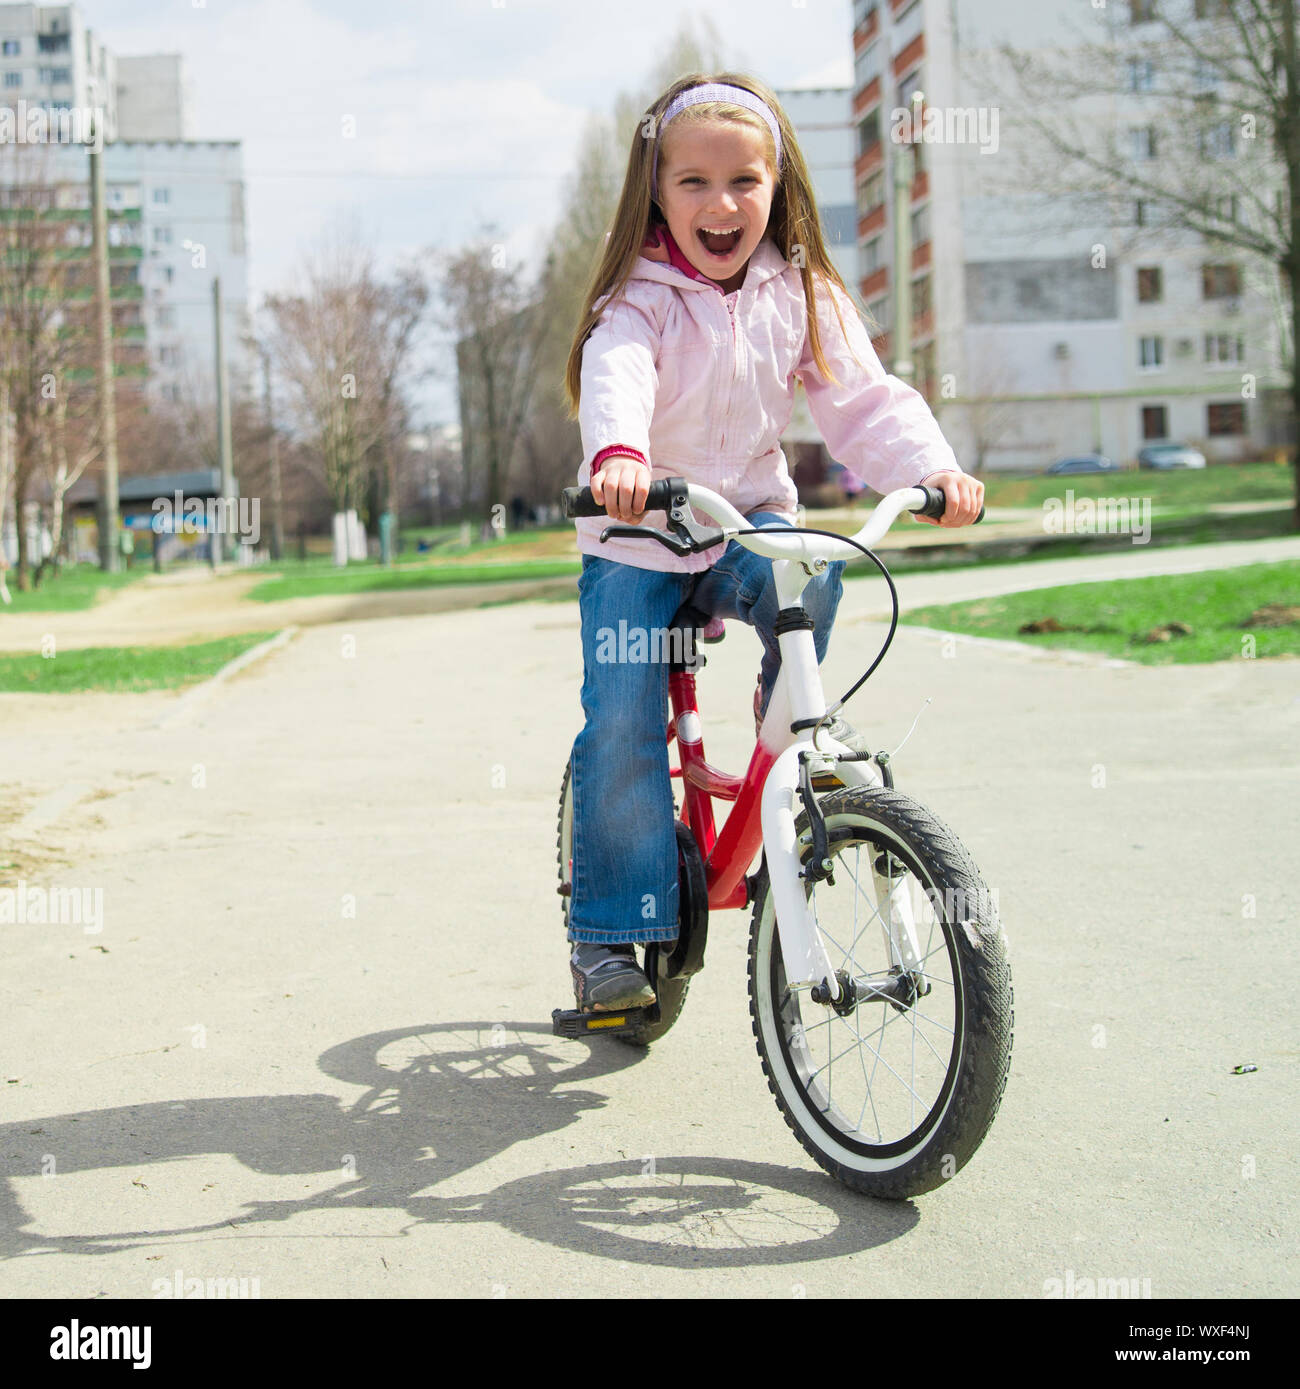 Как научить ребенка ездить на двухколесном велосипеде. Двухколесный велосипед для девочек. Как научиться кататься на велосипеде ребенку 12 лет девочке. Ребенок учится кататься на двухколесном велосипеде. Детский велосипед с ручкой чтобы научить ребенка кататься фото.